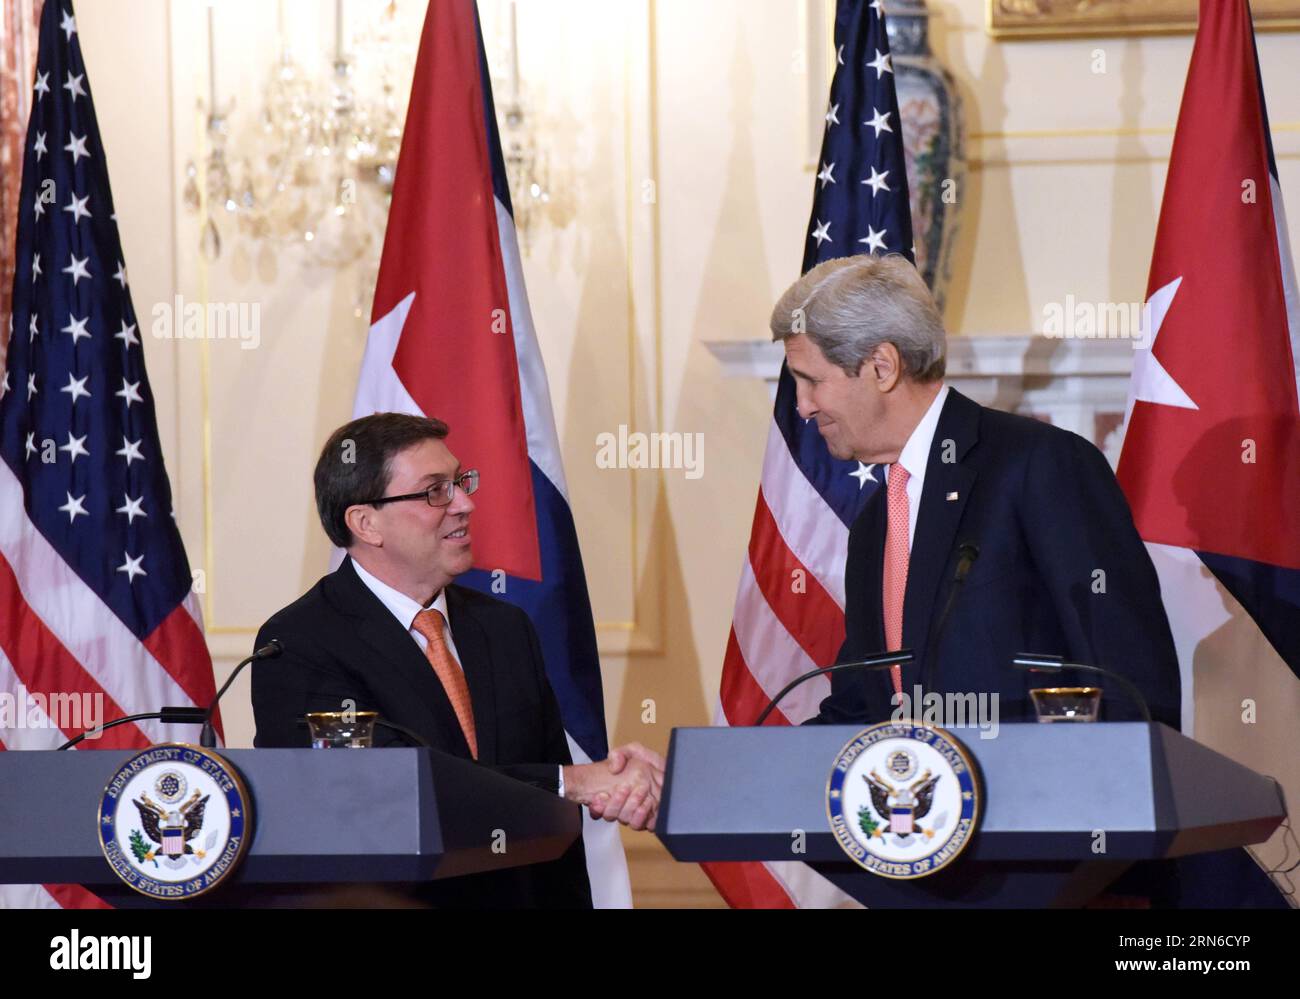 WASHINGTON D.C., 20 de julio de 2015 -- El secretario de Estado de Estados Unidos, John Kerry (R), y el canciller cubano Bruno Rodríguez, se dan la mano durante una conferencia de prensa conjunta en el Departamento de Estado en Washington, D.C., Estados Unidos, el 20 de julio de 2015. Estados Unidos y Cuba restablecieron las relaciones diplomáticas el lunes. ) YinxBogu PUBLICATIONxNOTxINxCHN WASHINGTON D C JULIO 20 2015 El Secretario de Estado de los Estados Unidos John Kerry r y los Cancilleres cubanos Bruno Rodríguez se dan la mano durante una conferencia de prensa conjunta EN el Departamento de Estado en Washington D C Estados Unidos Foto de stock